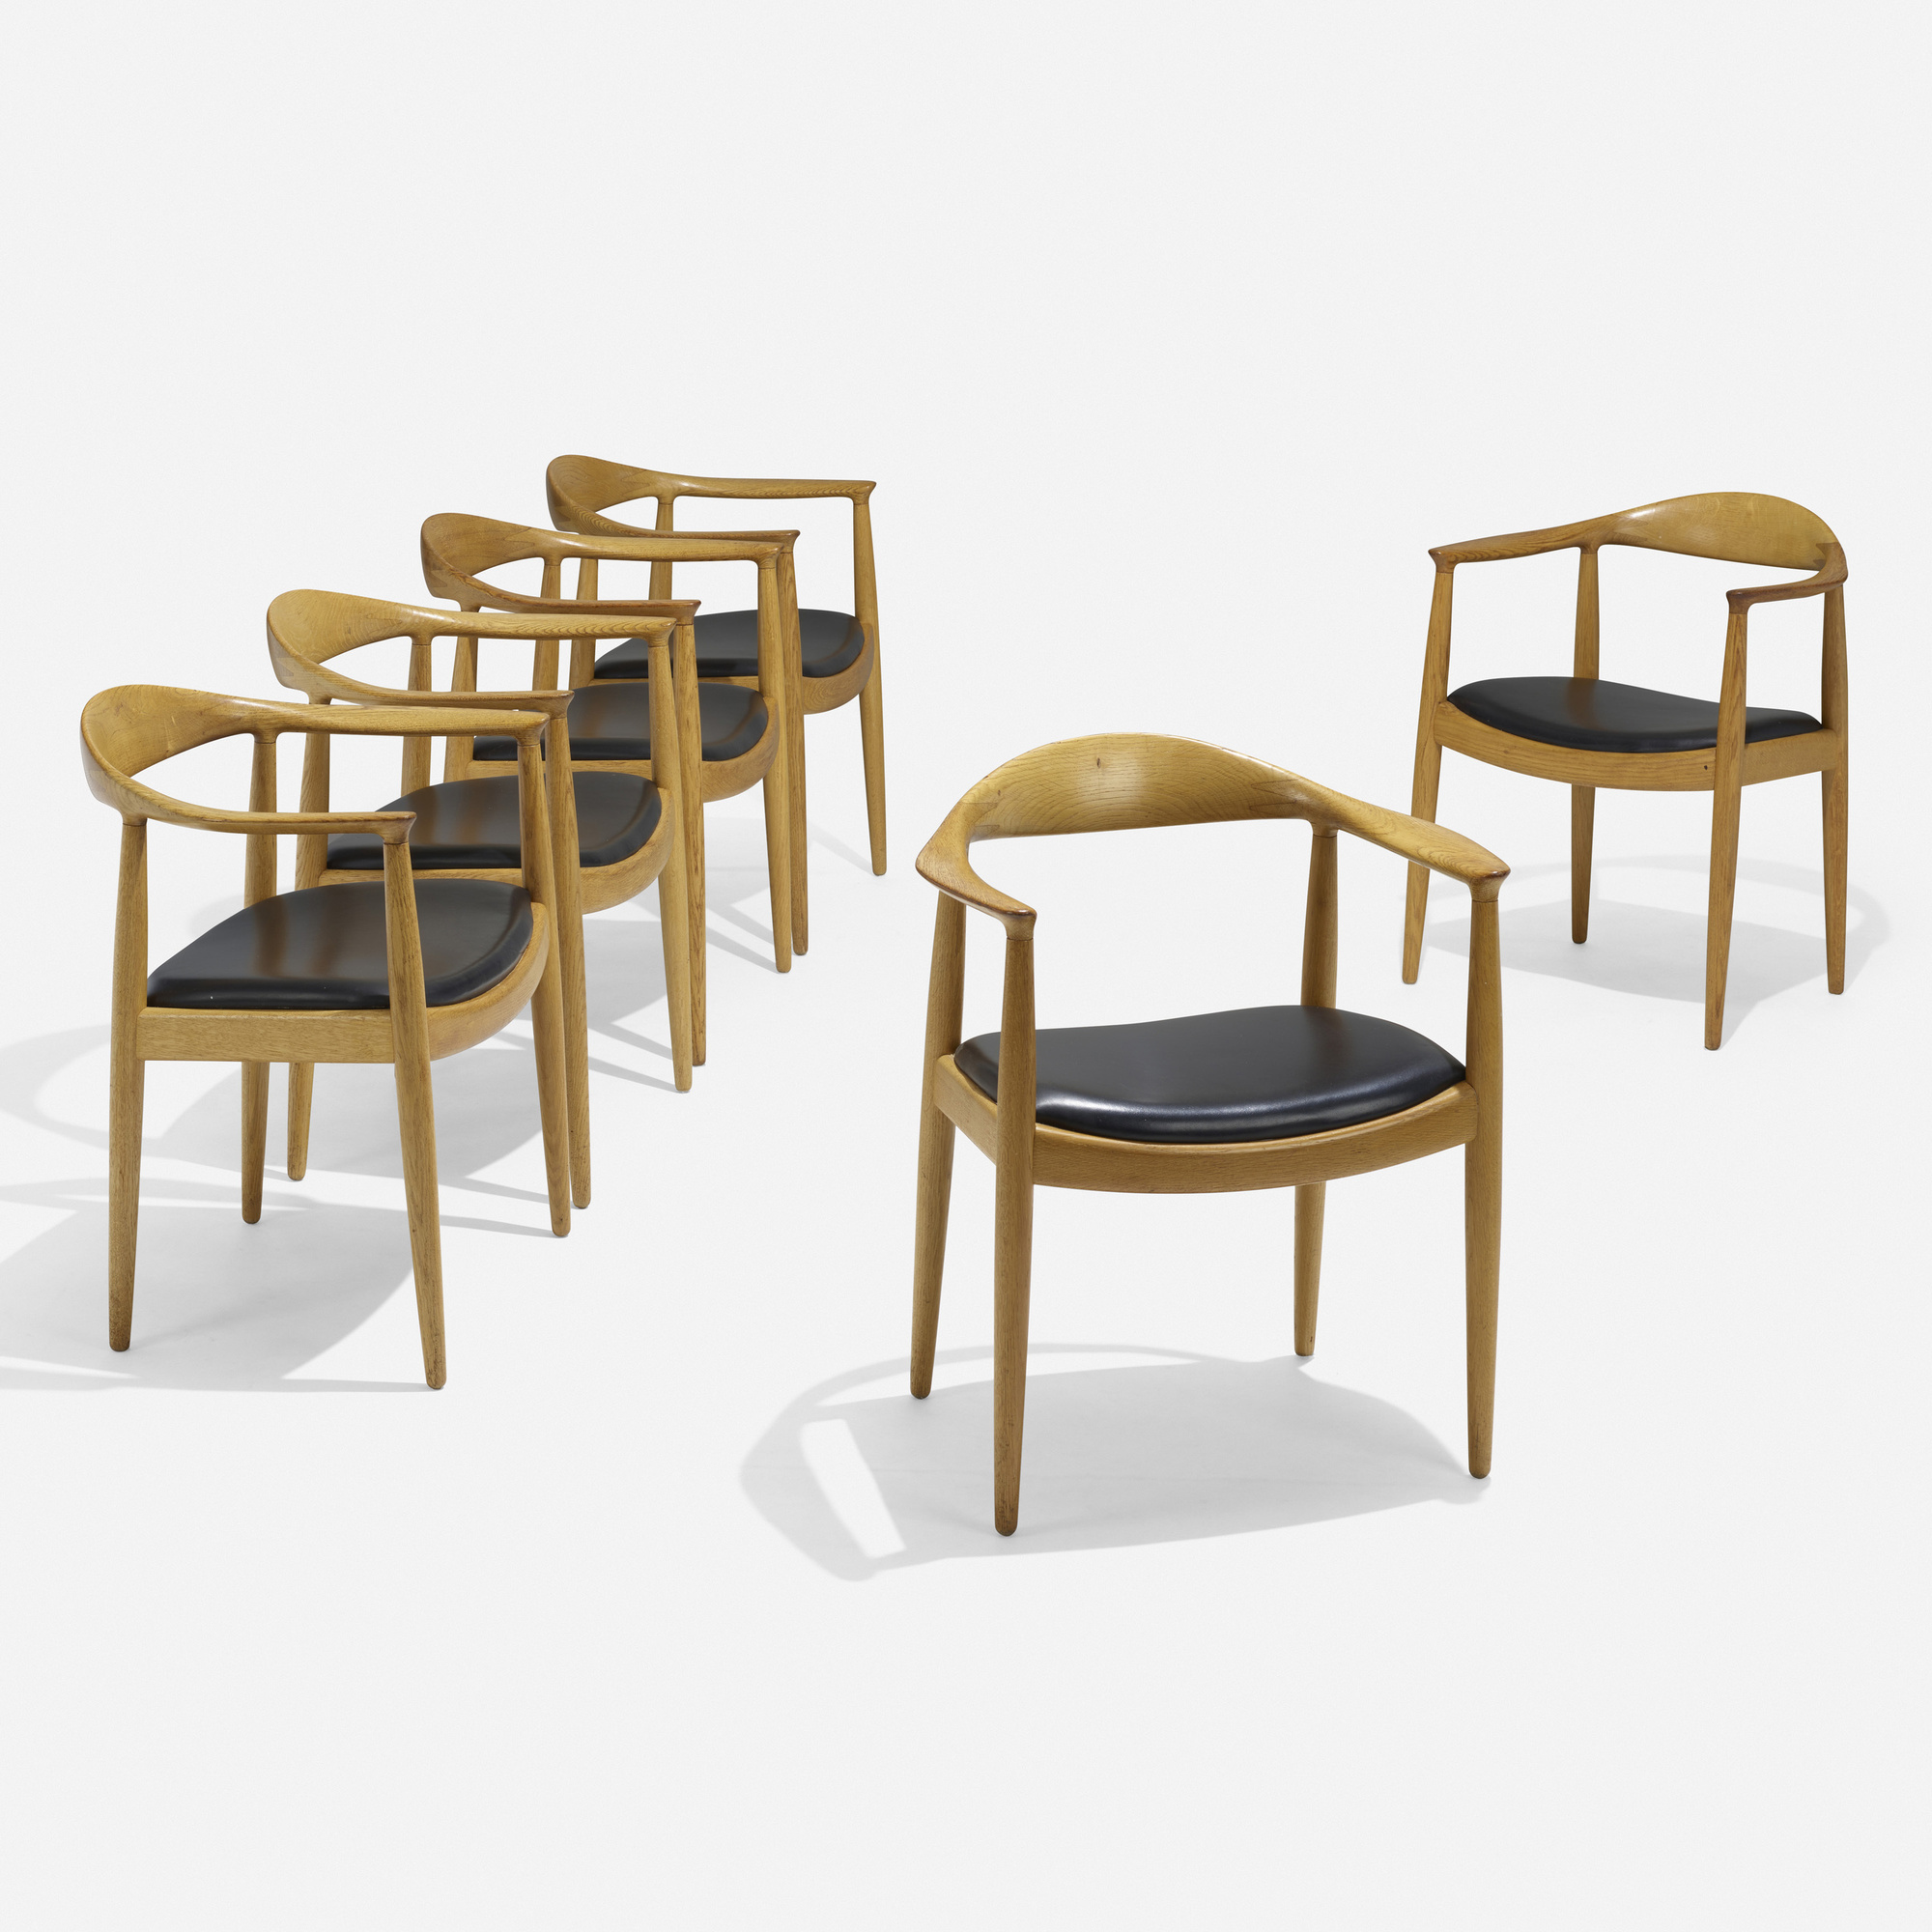 133: HANS J. WEGNER, The Chairs, set of six < Scandinavian Design 